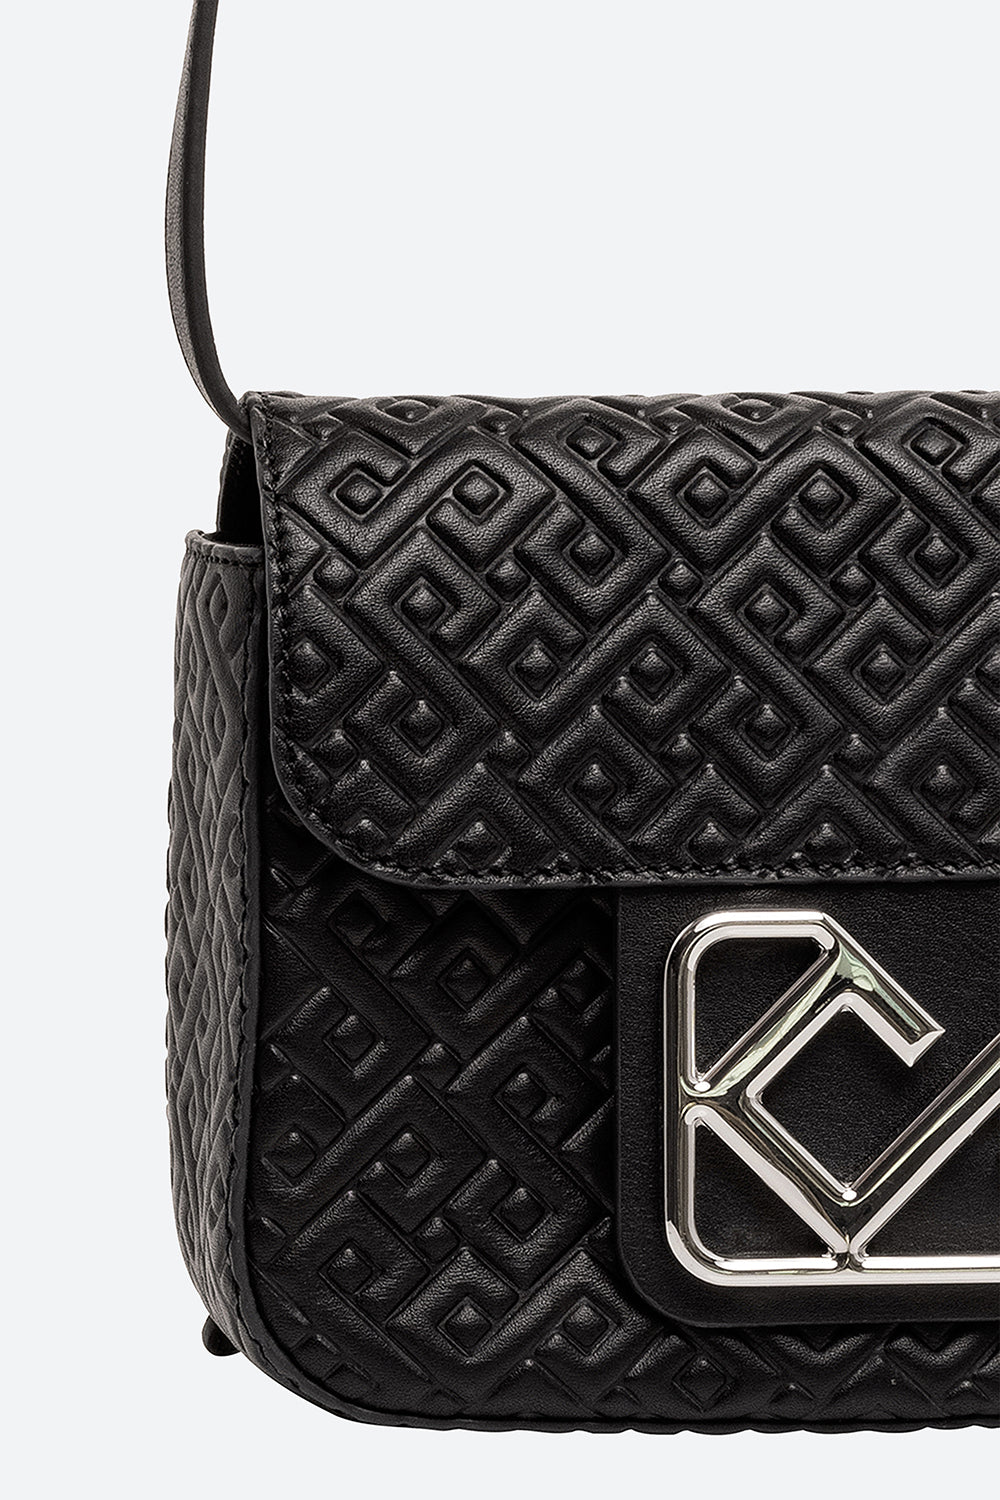 Soledad Leather Belt Bag in Black, with Matte Black Hardware